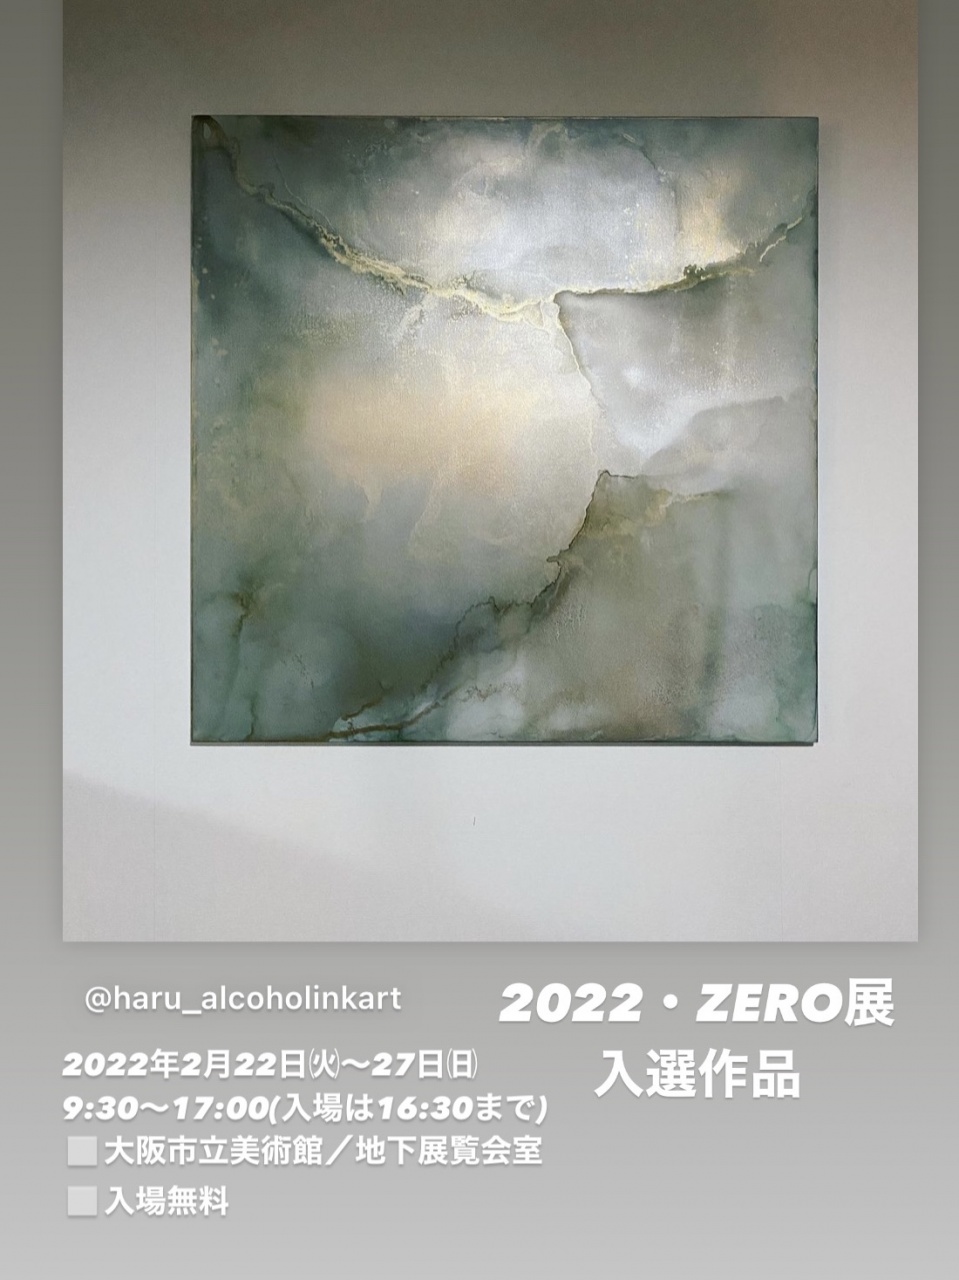 この度大阪で開催される公募展「2022・ZERO展」に本展